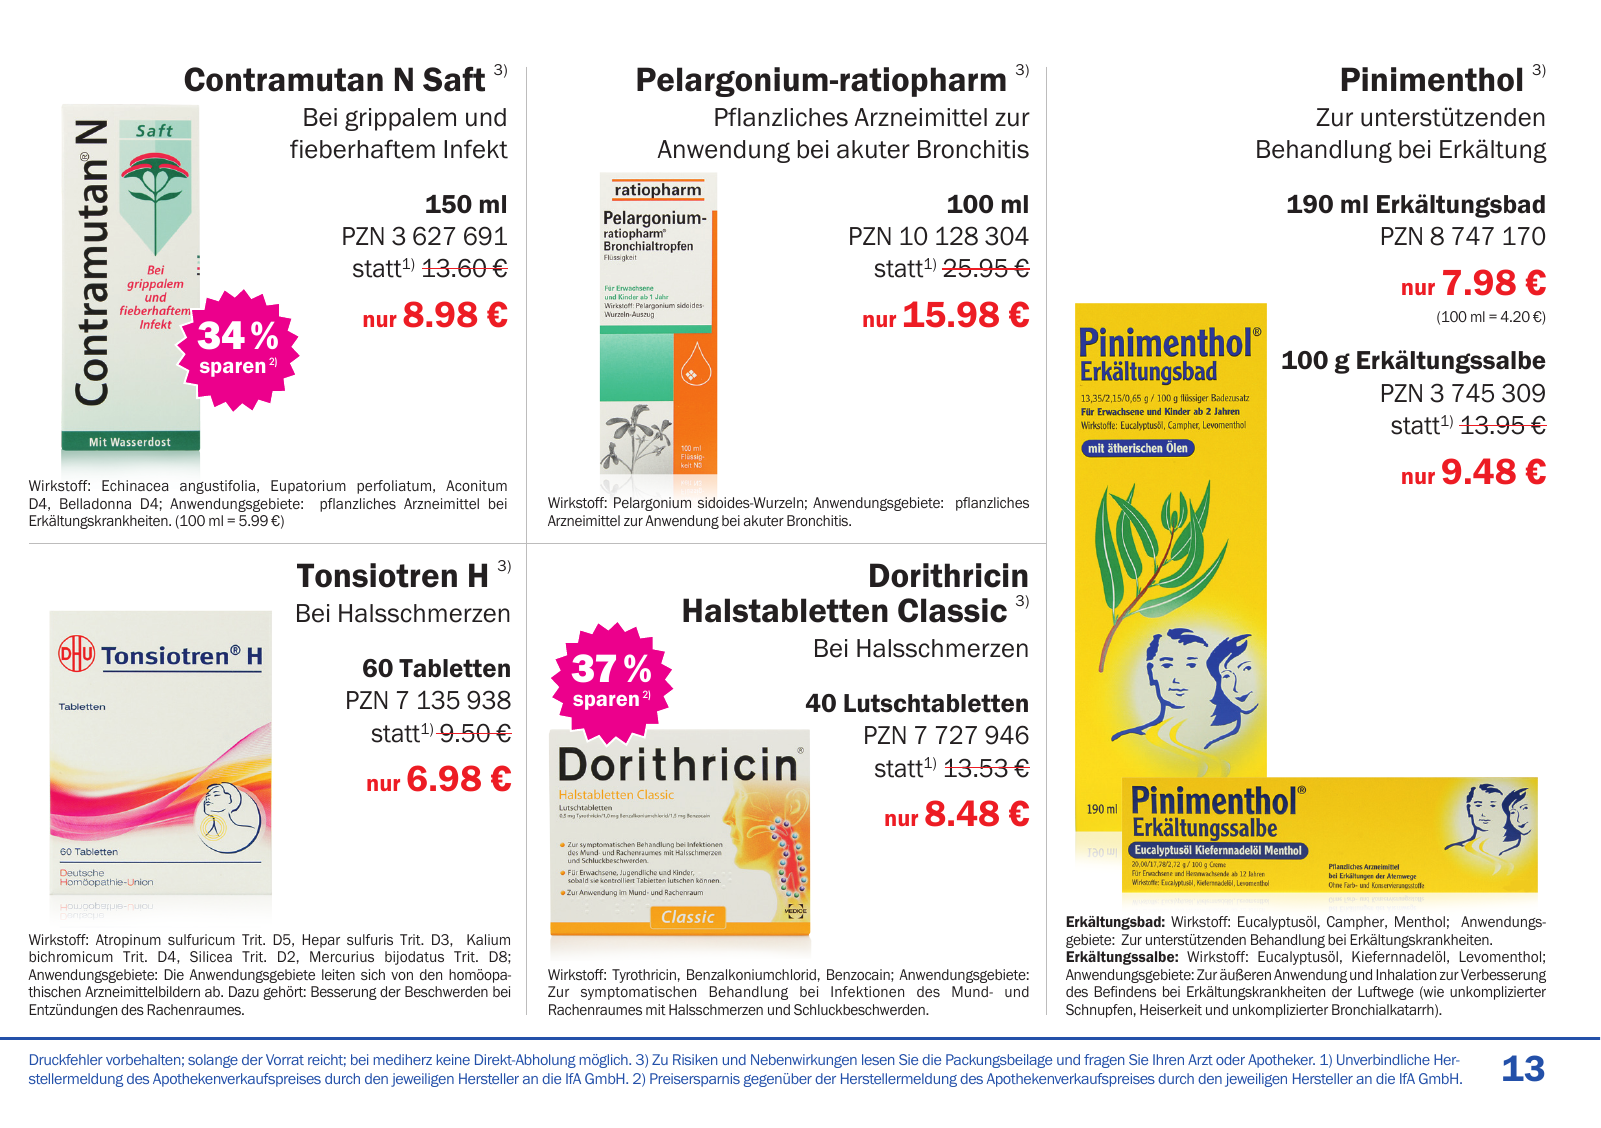 Vorschau Mediherz Katalog Herbst/Winter 2015/16 Seite 13